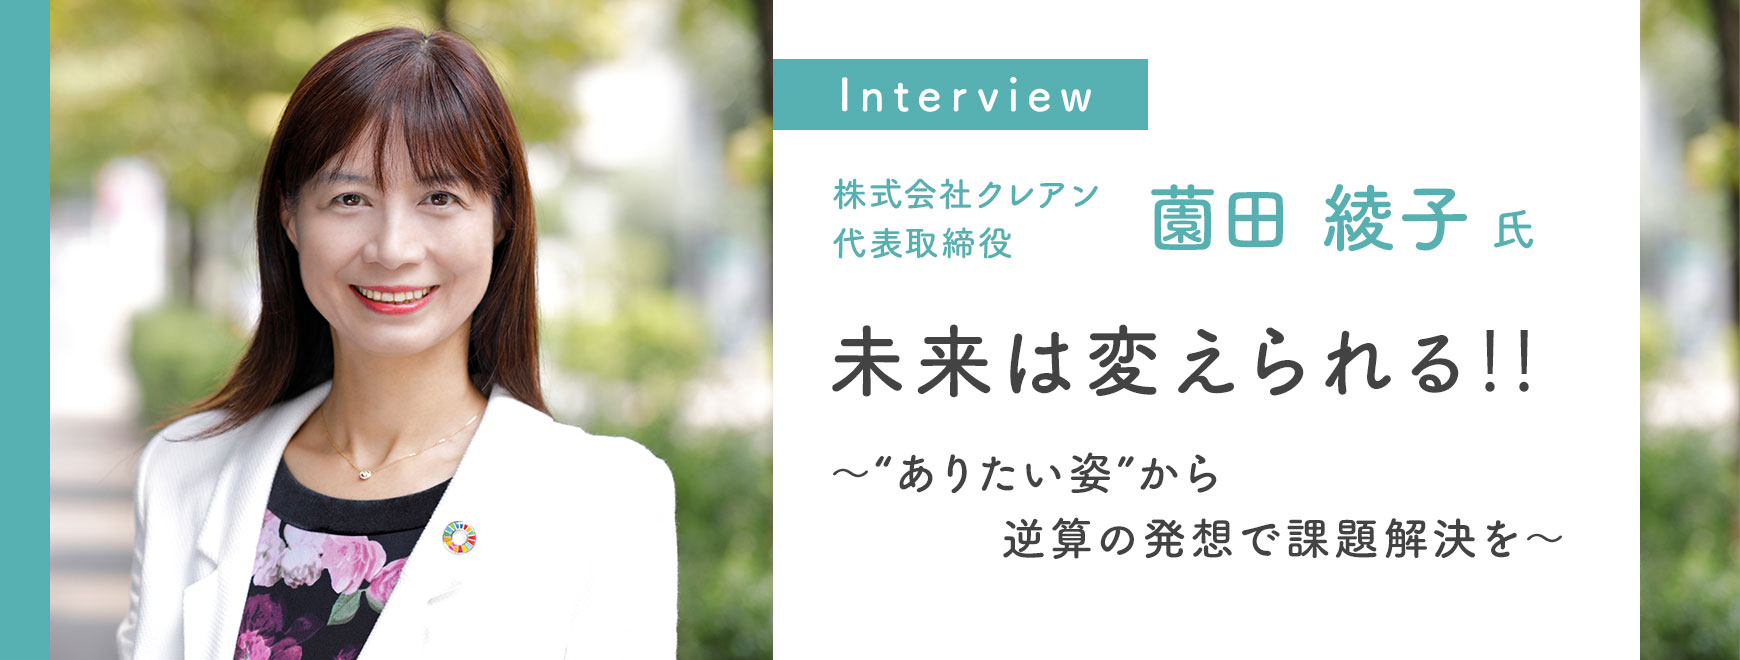 薗田 綾子 氏 インタビュー 未来は変えられる‼～“ありたい姿”から逆算の発想で課題解決を～